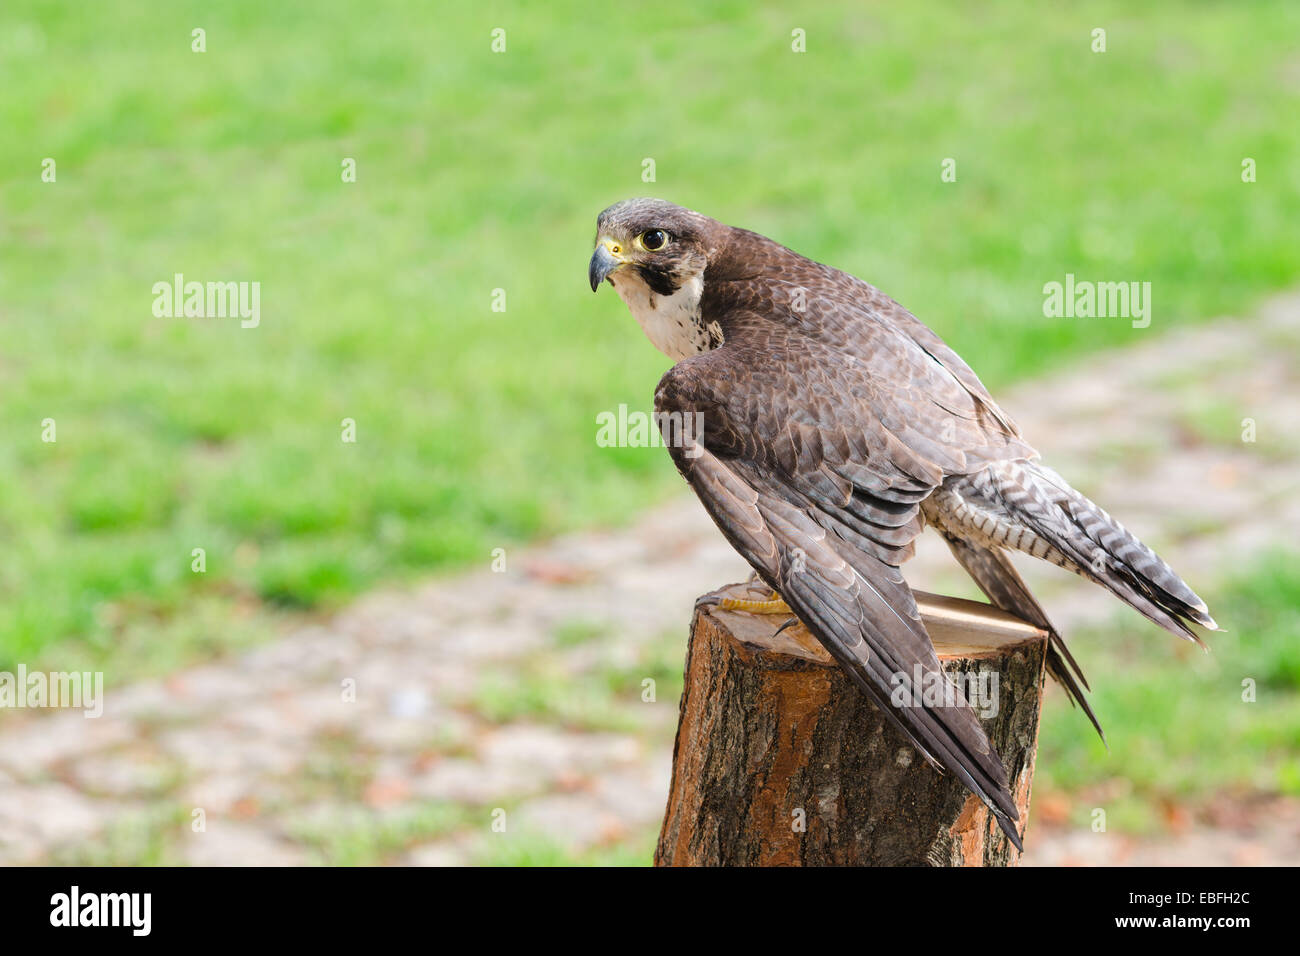 Salvaje depredador falcon hawk raptor más rápido ave de rapiña encaramado en Stump y extender sus alas contra el pasto verde con ejemplar gratuito Foto de stock